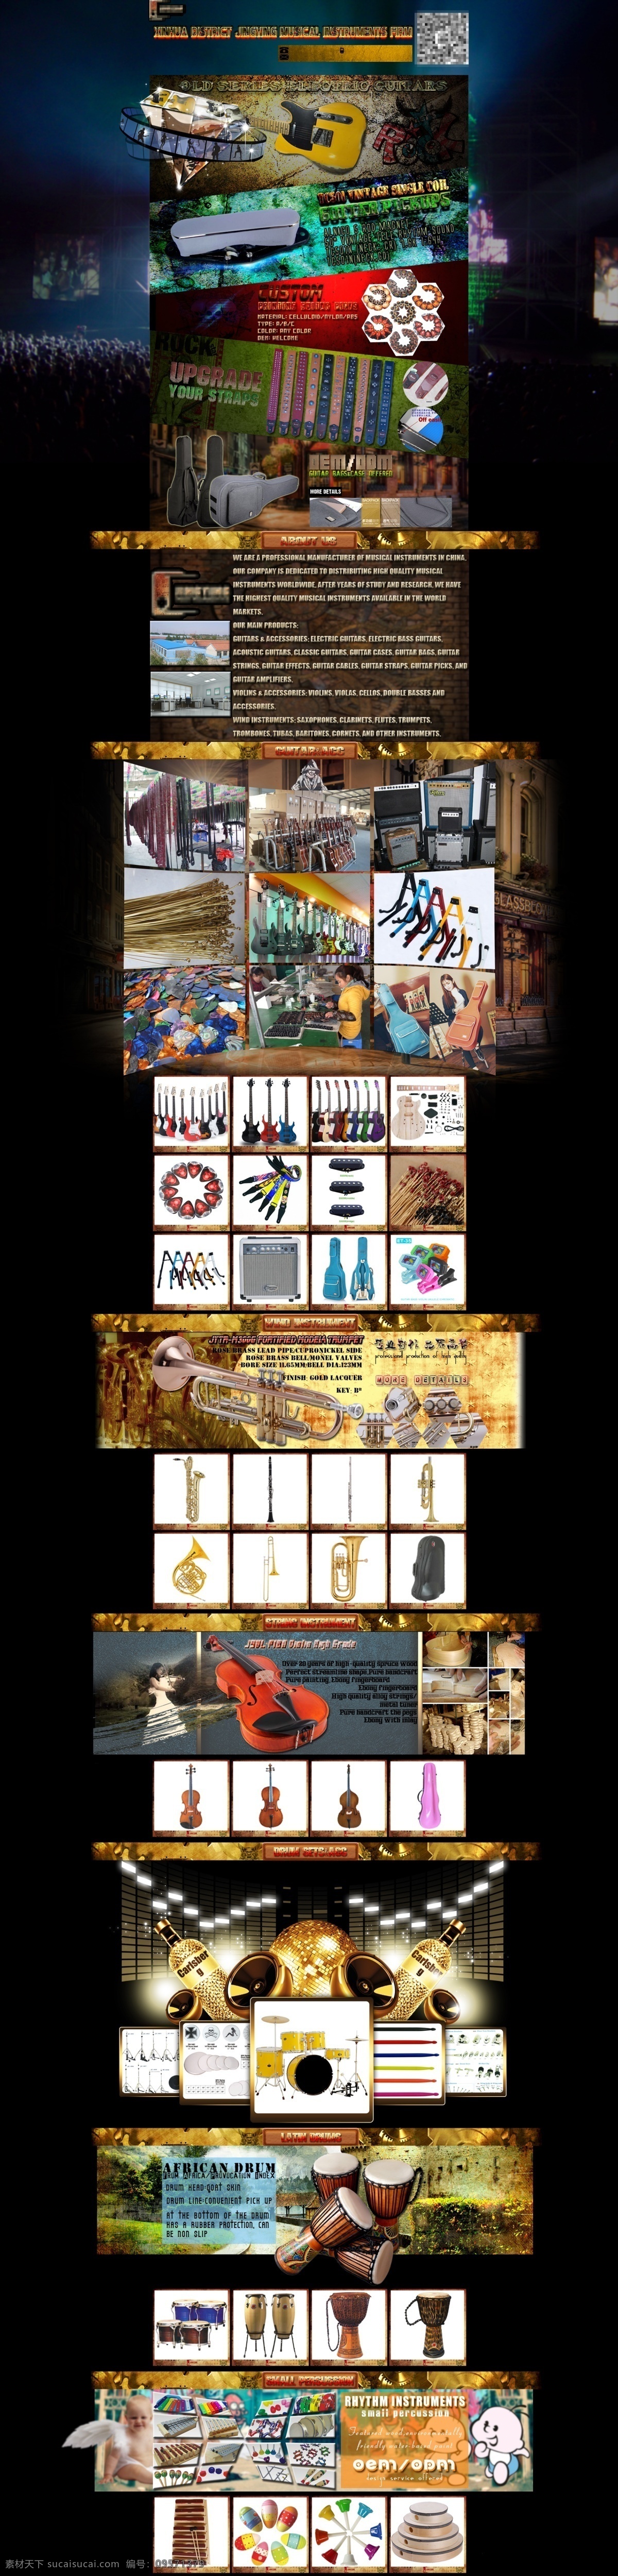 阿里巴巴 国际 站 首页 模板 阿里巴巴英文 阿里巴巴国际 乐器 吉他 摇滚 复古 颓废 音乐 淘宝 电商 alibaba musical instrument rock